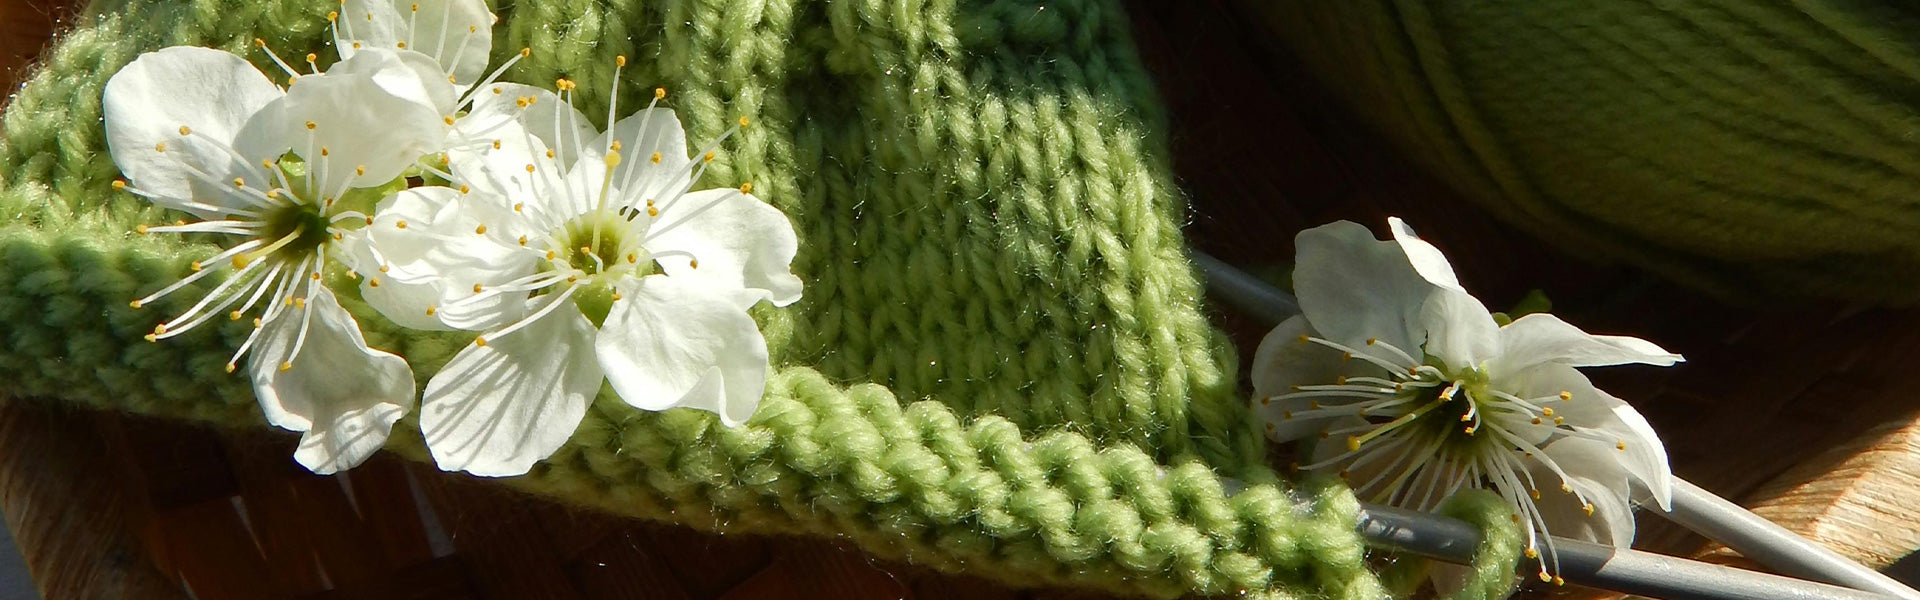 gomitoli lana verde primavera